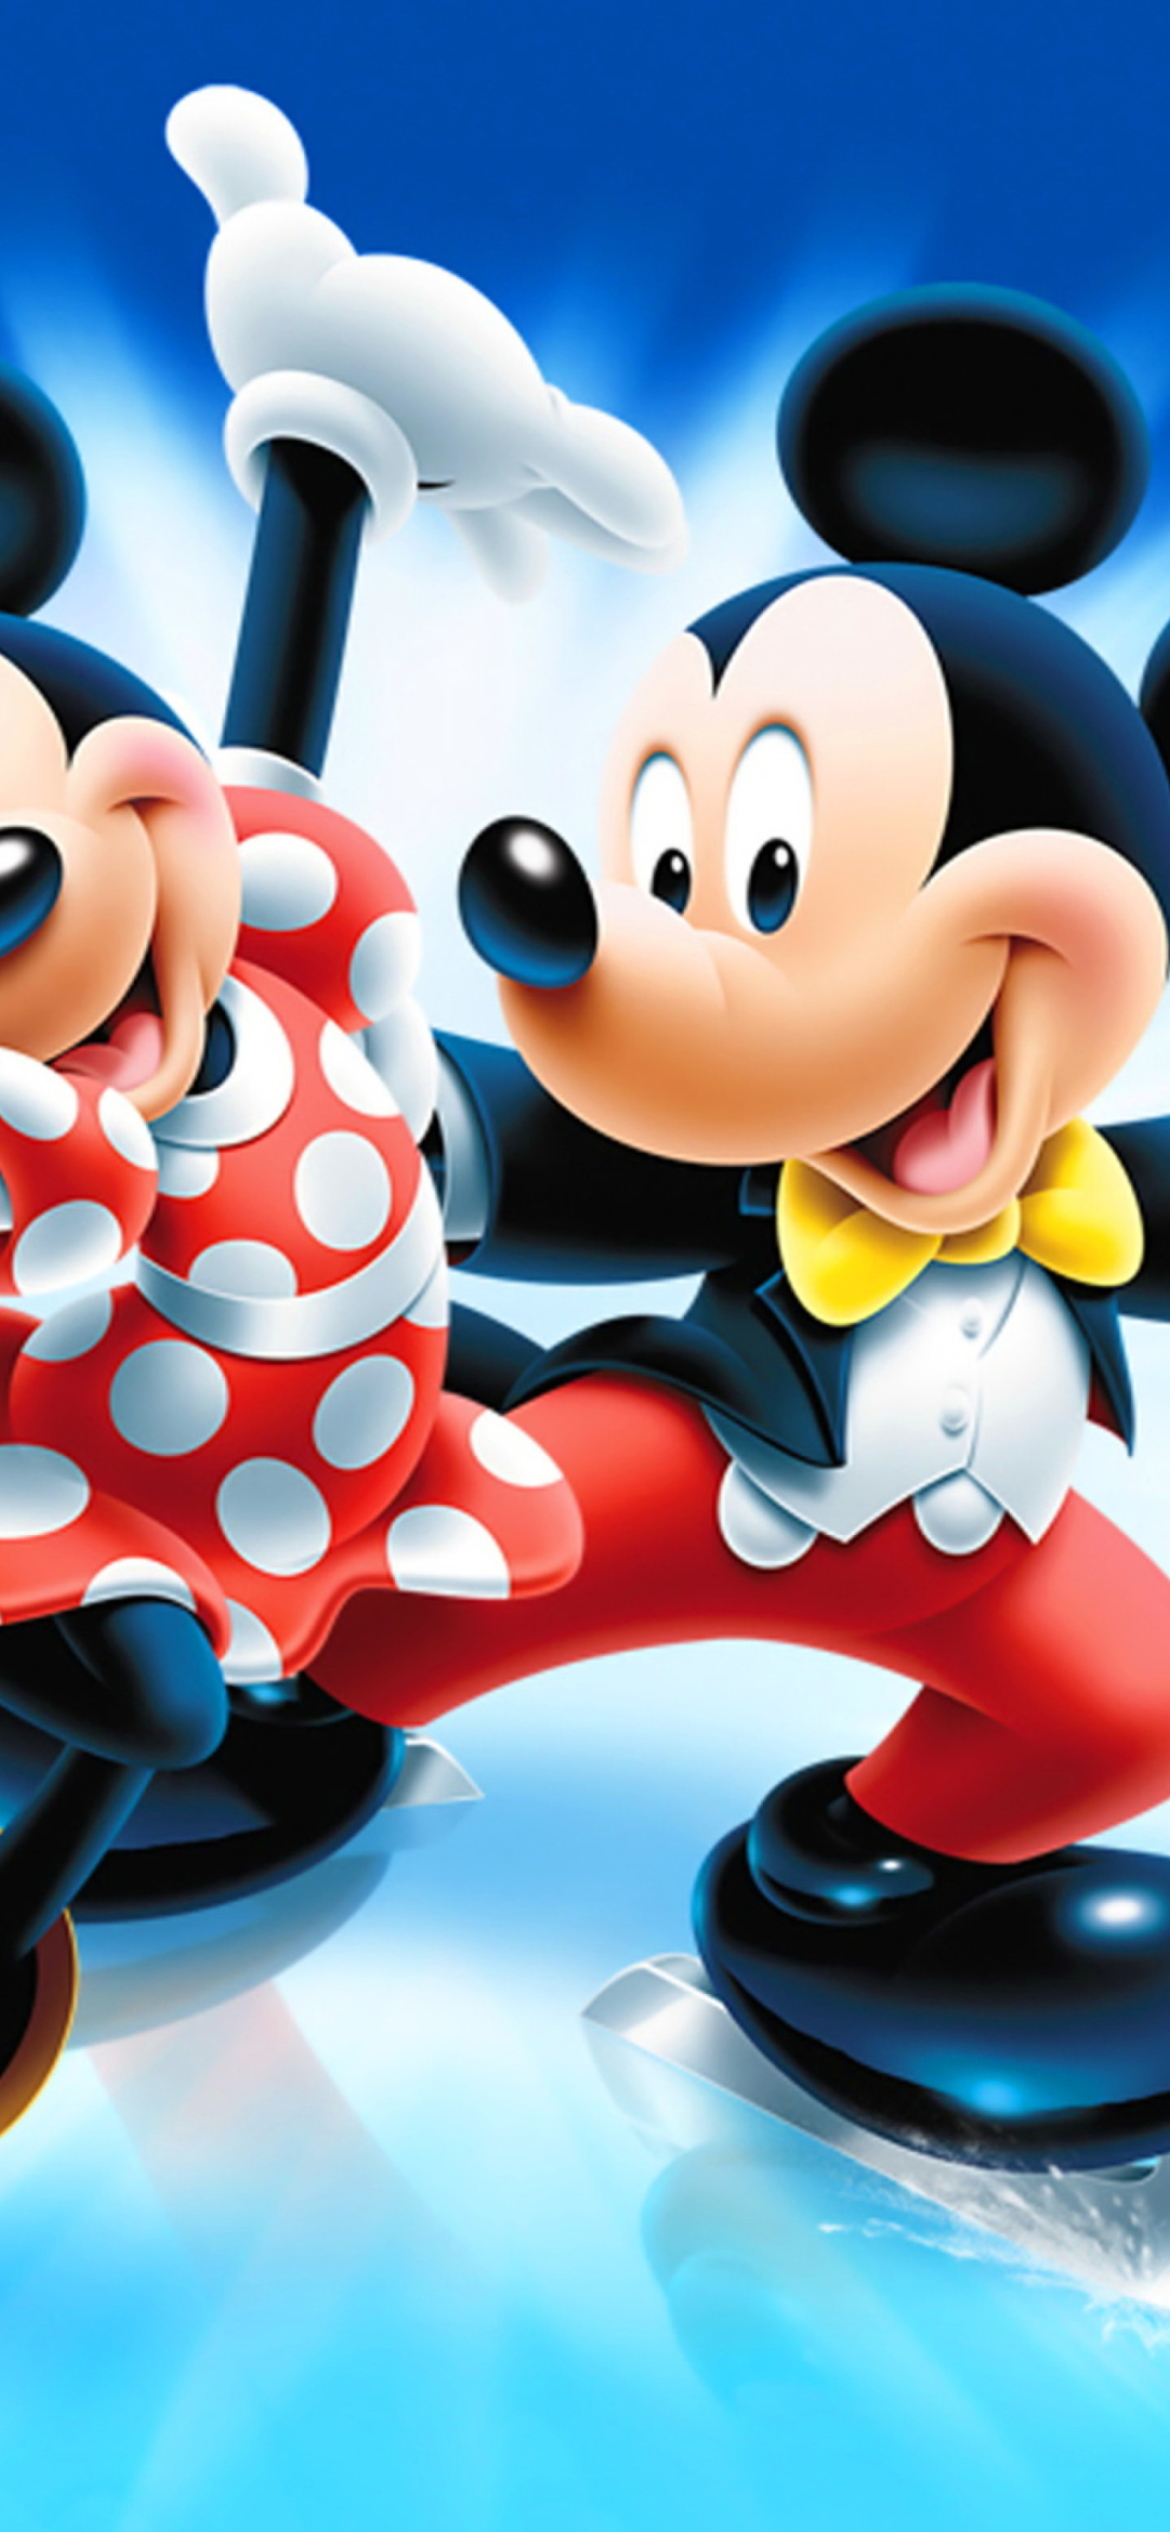 Обои Mickey Mouse 1170x2532